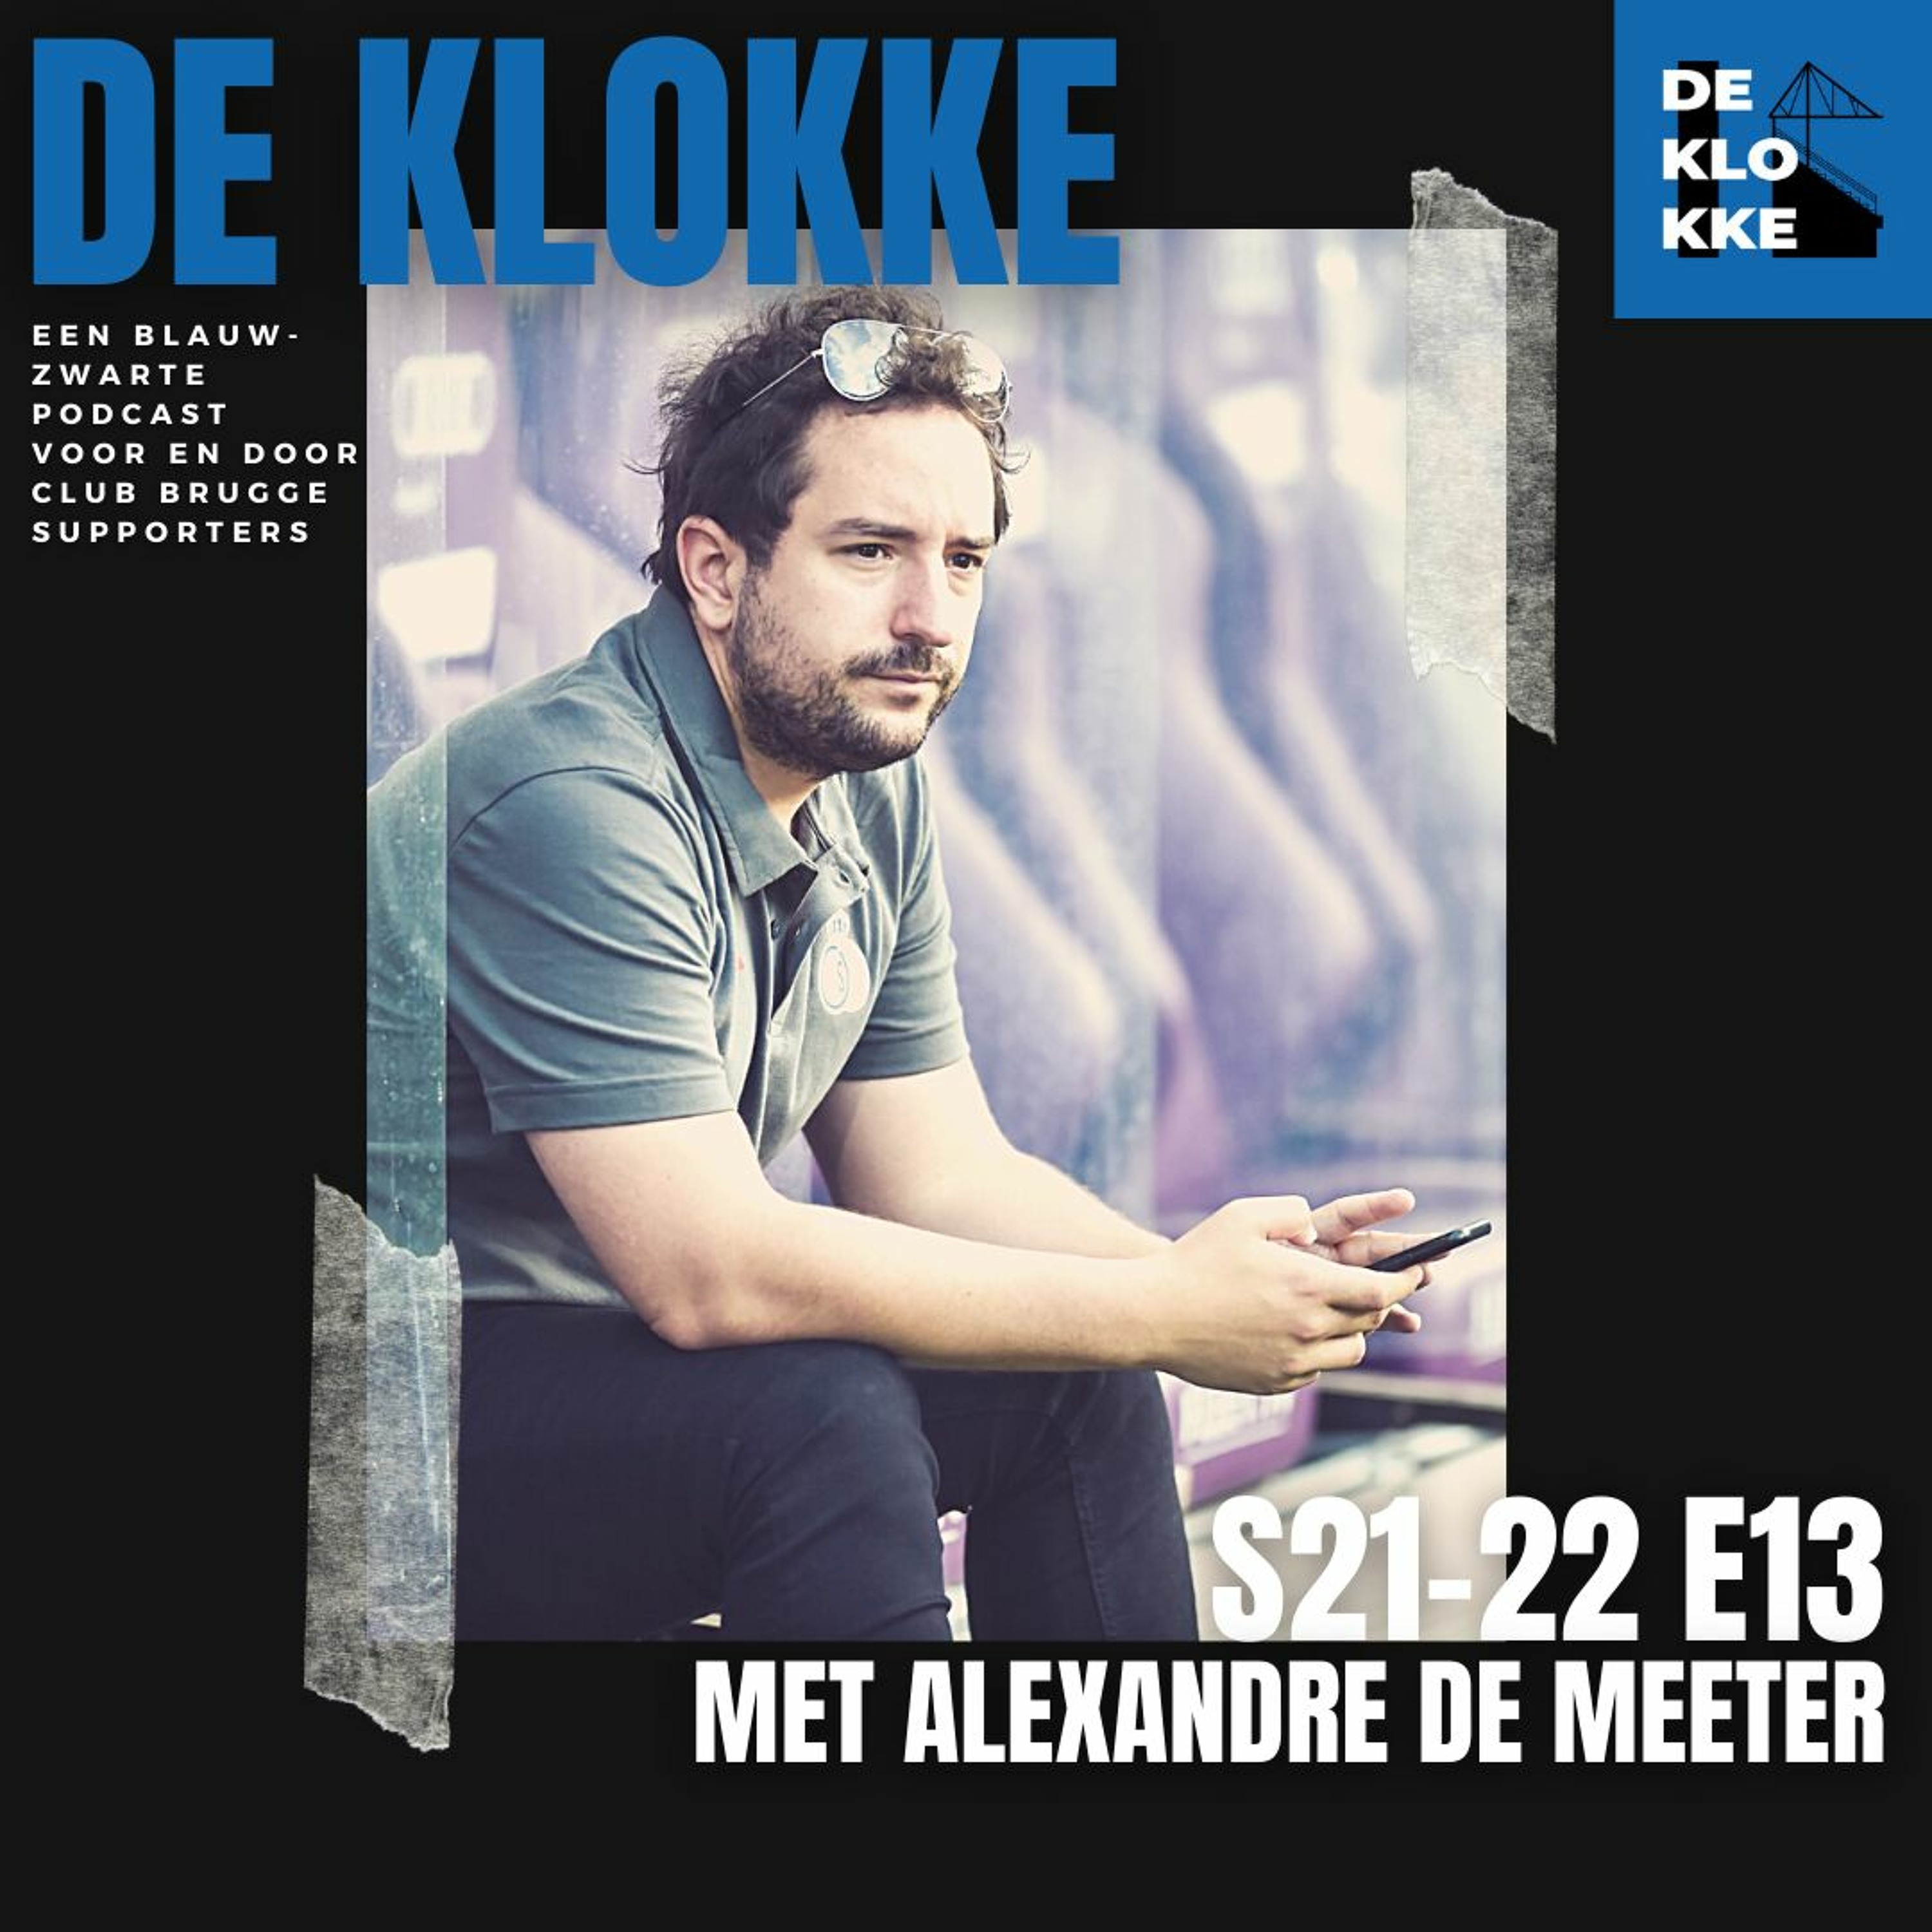 De Klokke S21-22 E13 met Alexandre De Meeter "Ik verwacht een zeer aangename topper donderdag"